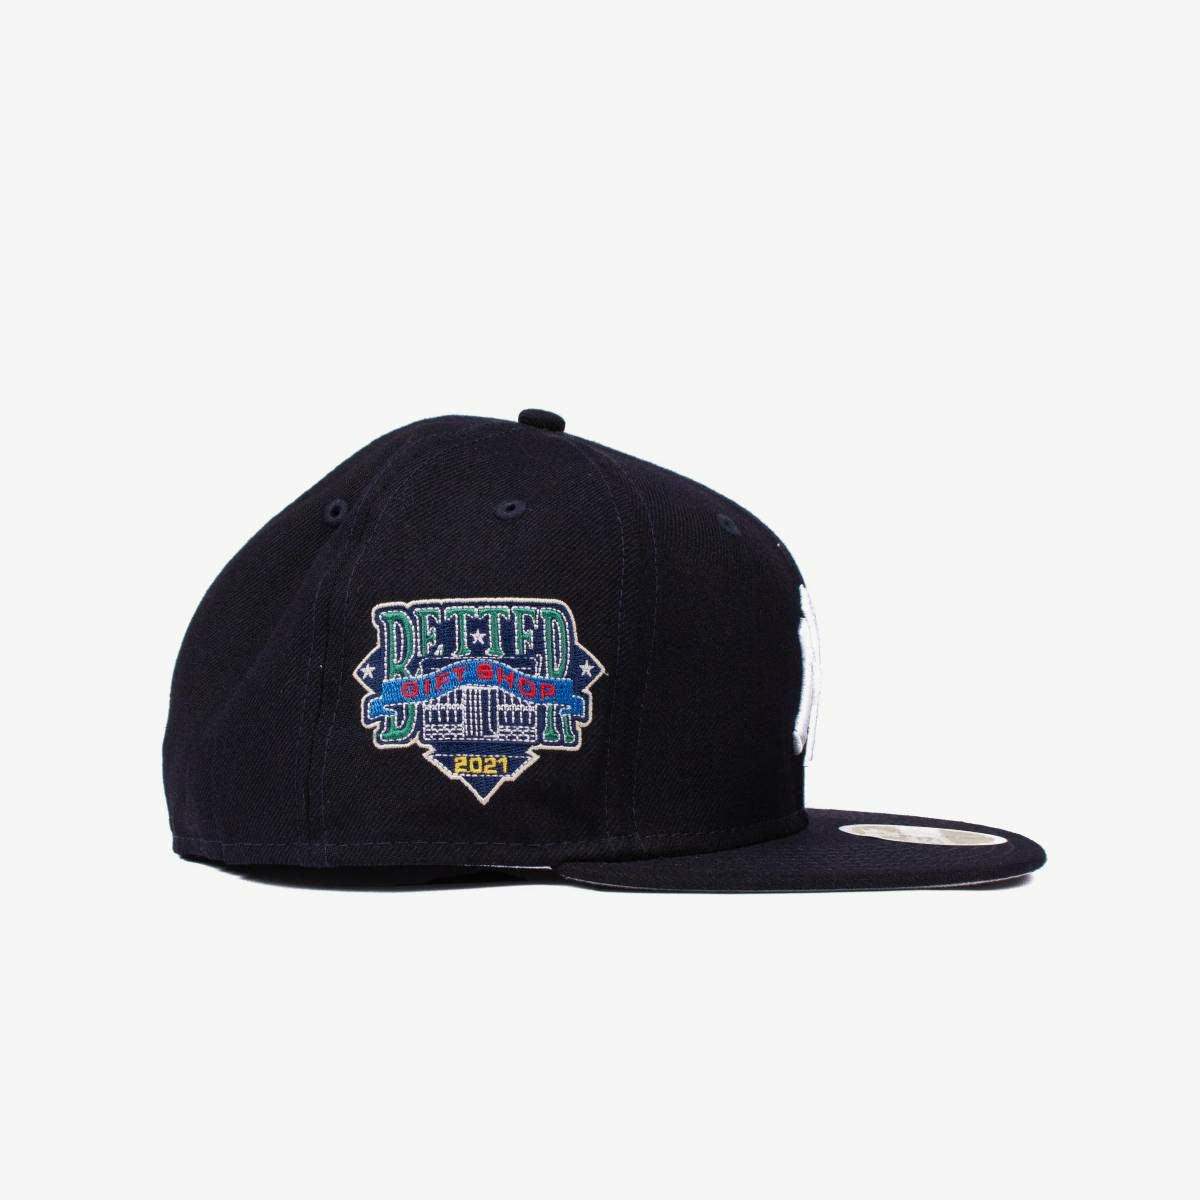 Better™ Gift Shop/LTTT Grey CAP - 帽子